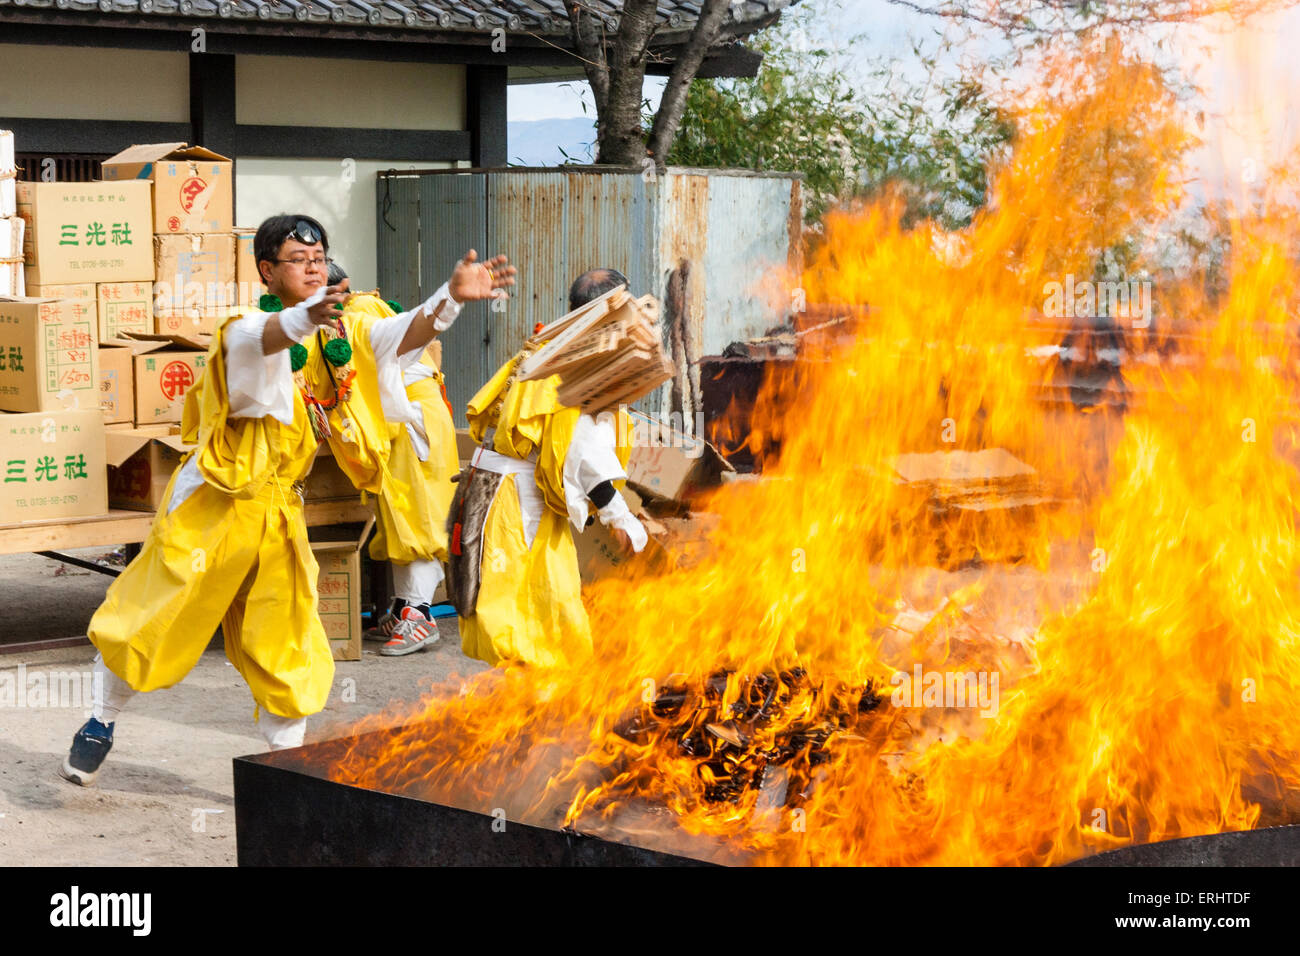 Giappone, Nishinomiya, Mondo Yakujin tempio. Masterizzazione annuale rituale, con giallo derubato yamabushi monaci, Shugendo, gettando scatole di vecchie omikuji nel fuoco. Foto Stock